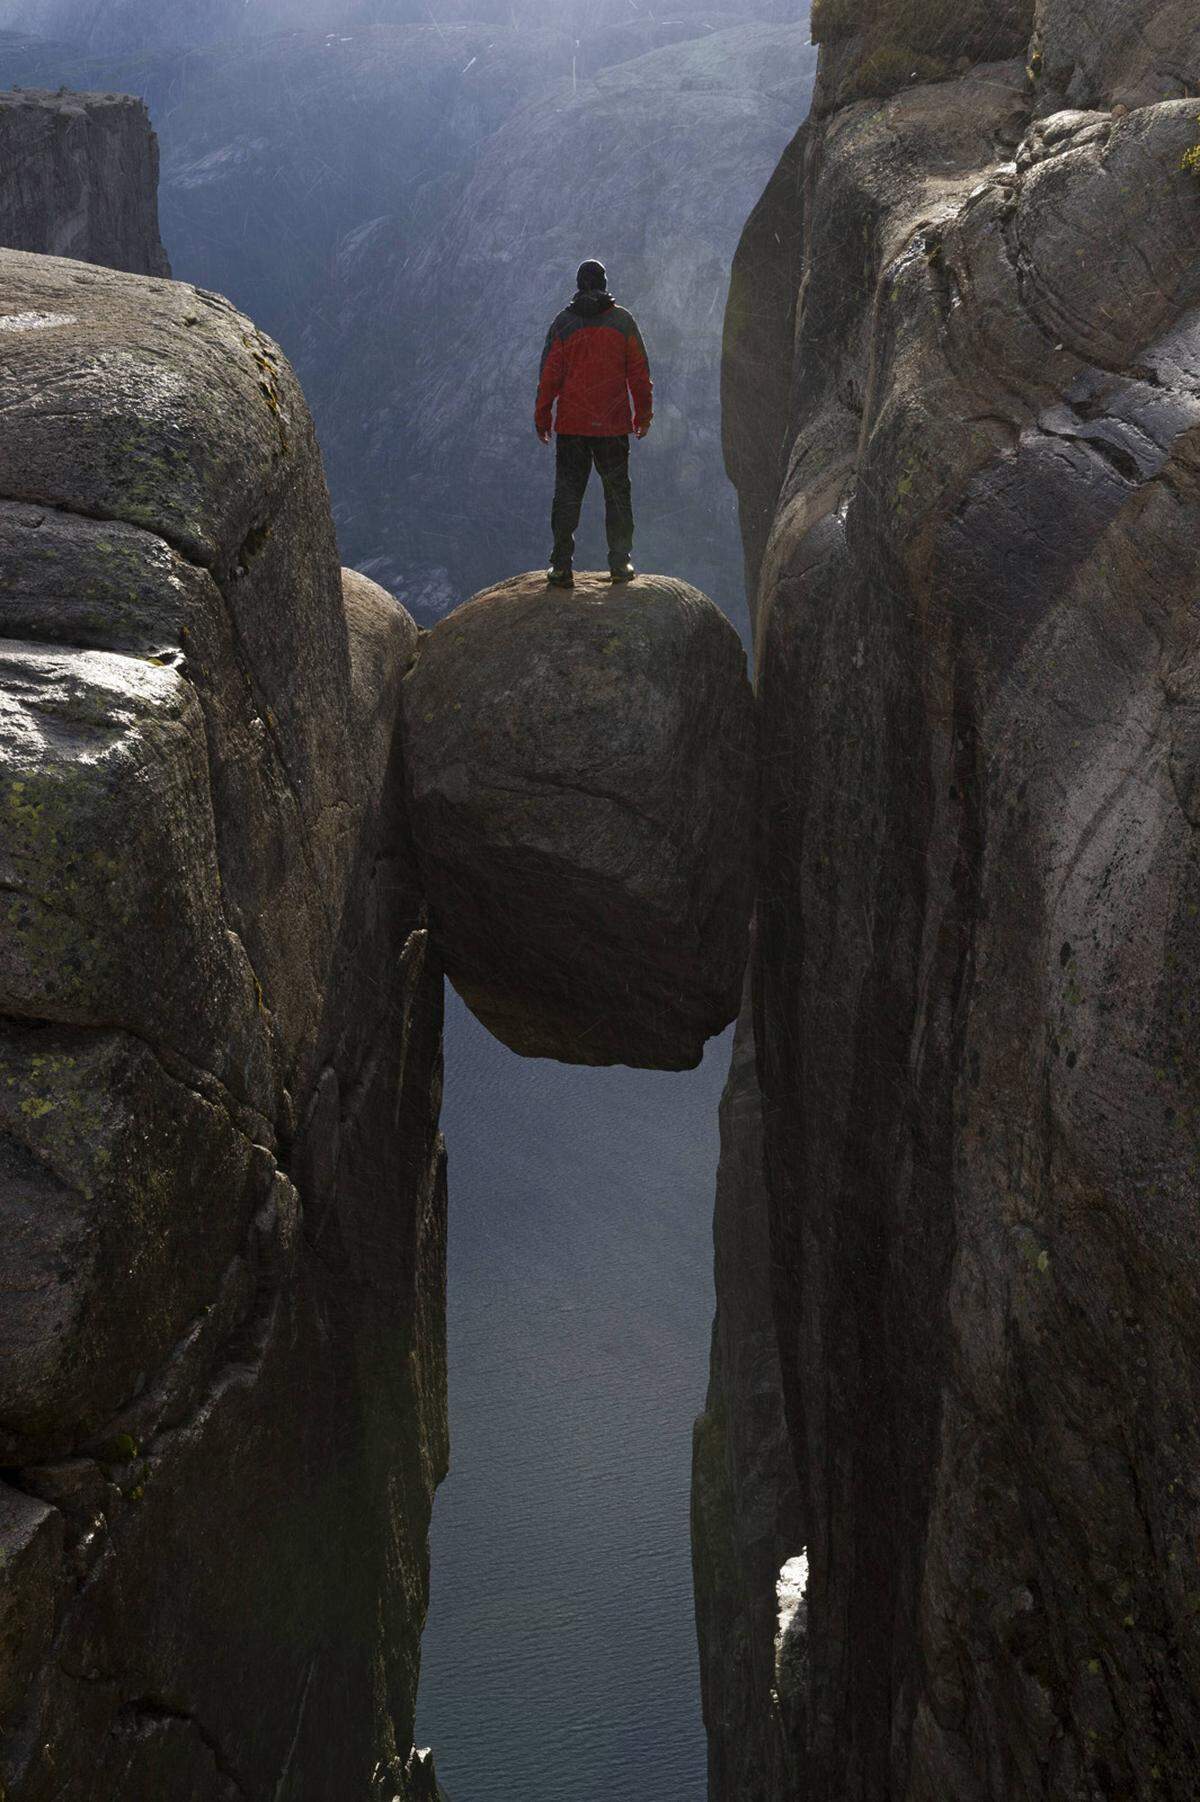 In zigfacher Ausführung hat auch dieses Bild schon Instagram überschwemmt: Mutige Fotomodelle stellen sich dafür auf den fünf Kubikmeter großen Steinblock, der zwischen einer 1000 Meter tiefen Felsspalte klemmt.